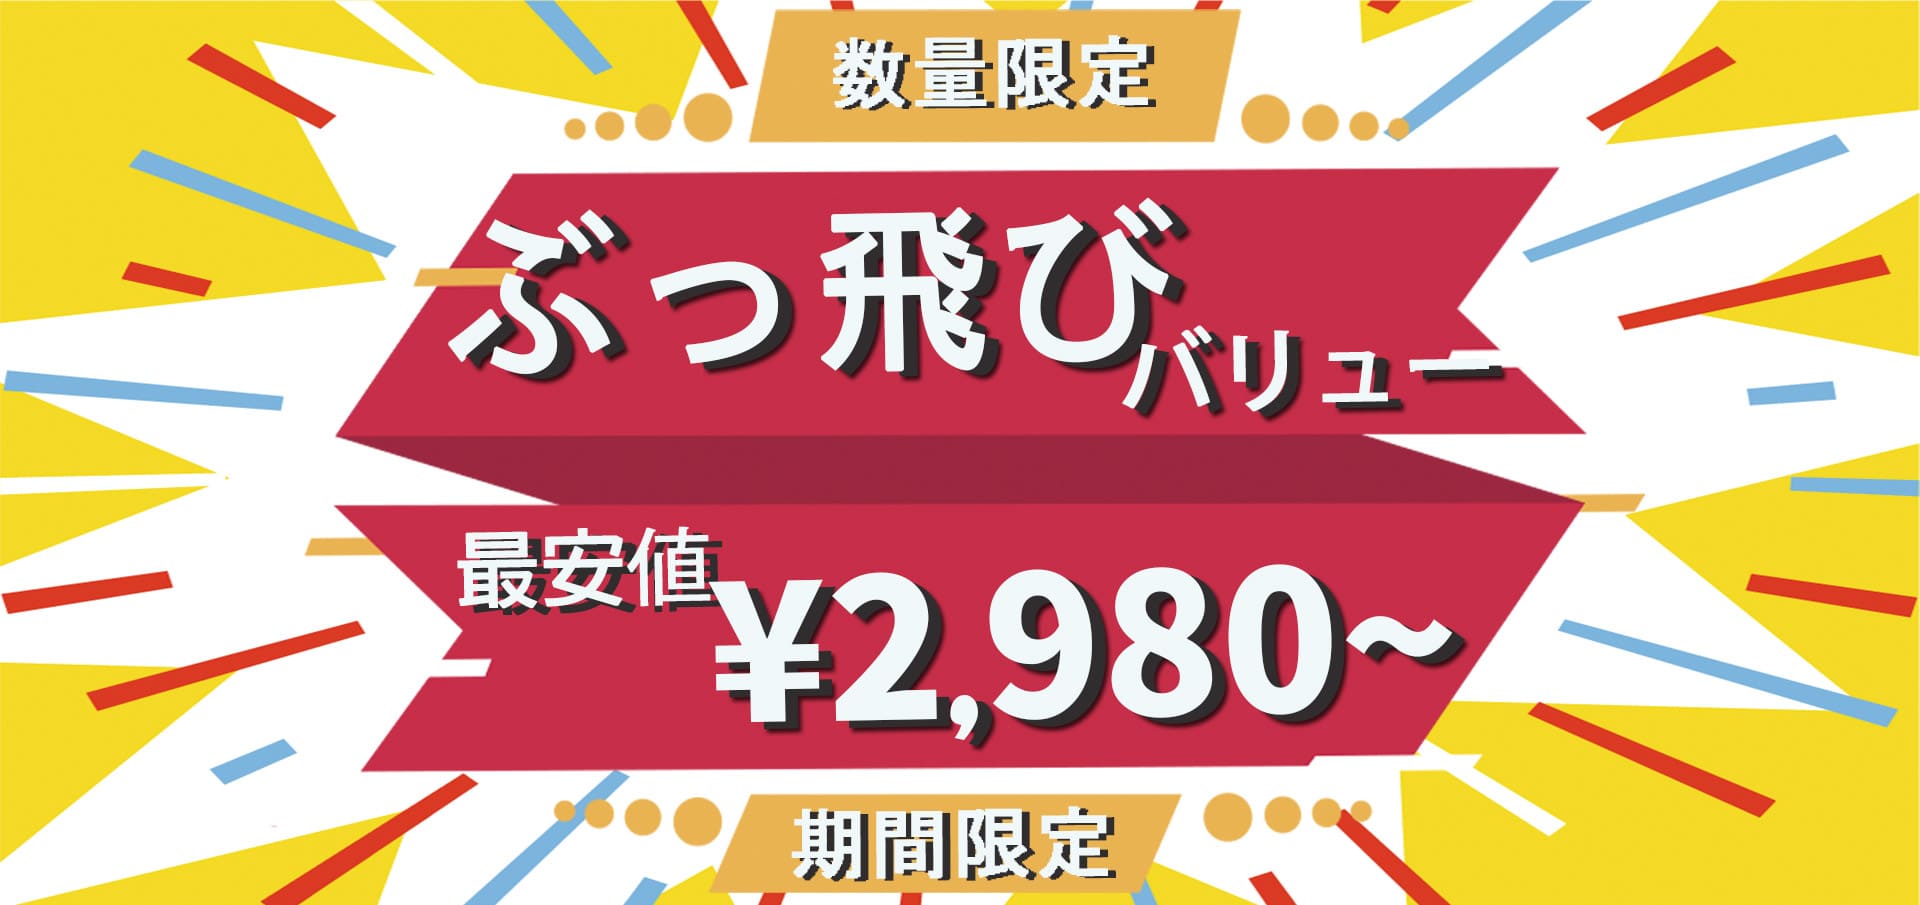 数量限定 ぶっ飛びバリュー 最安値¥2,980〜